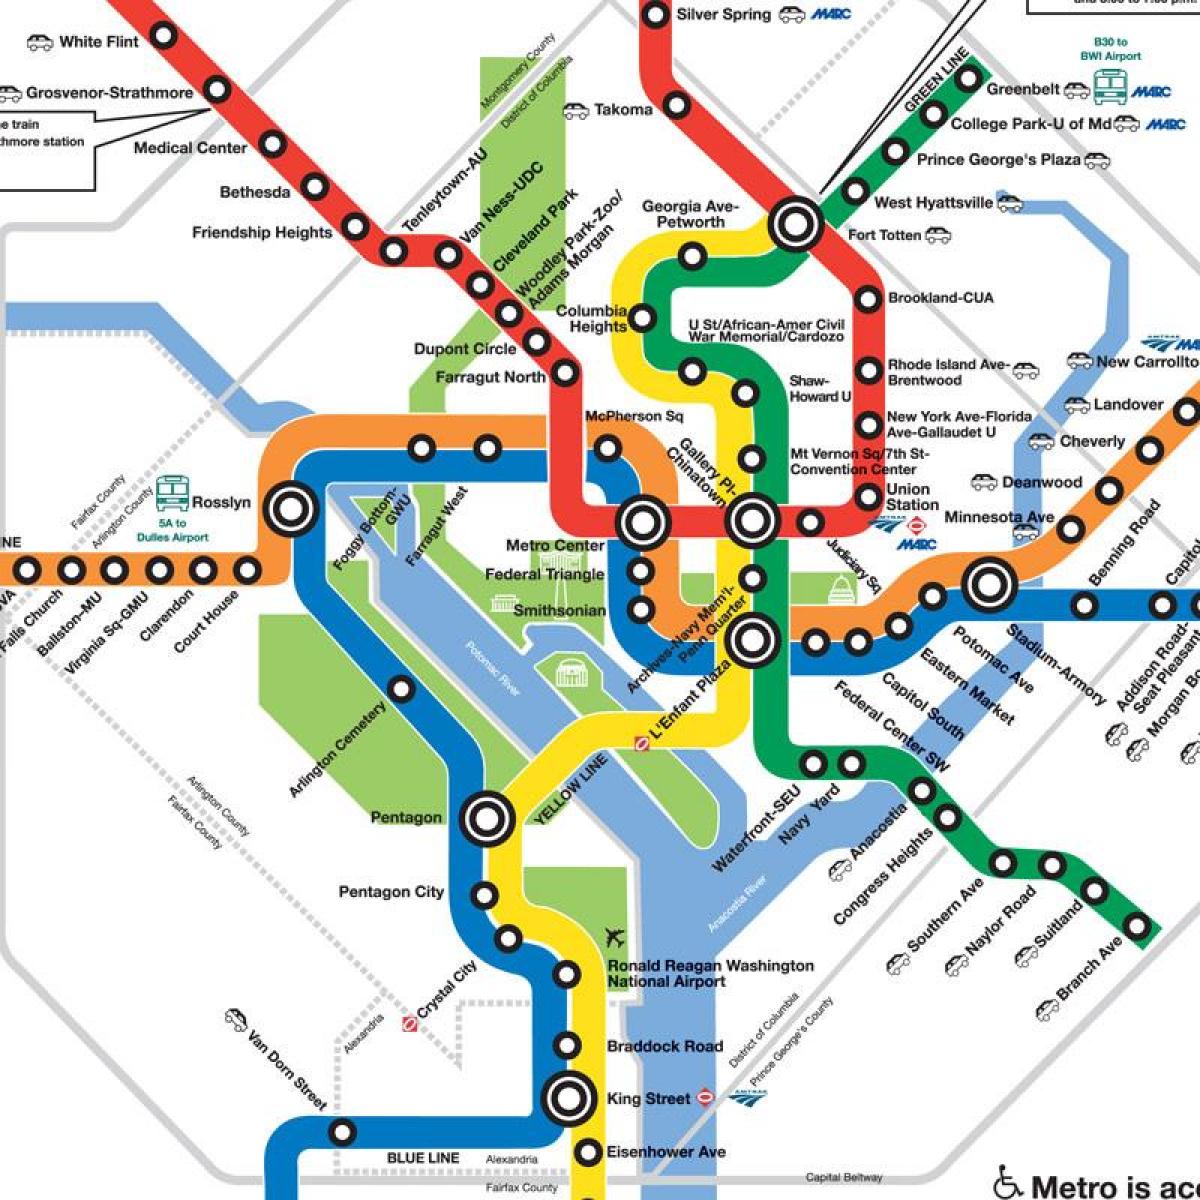 yeni dc metro haritası